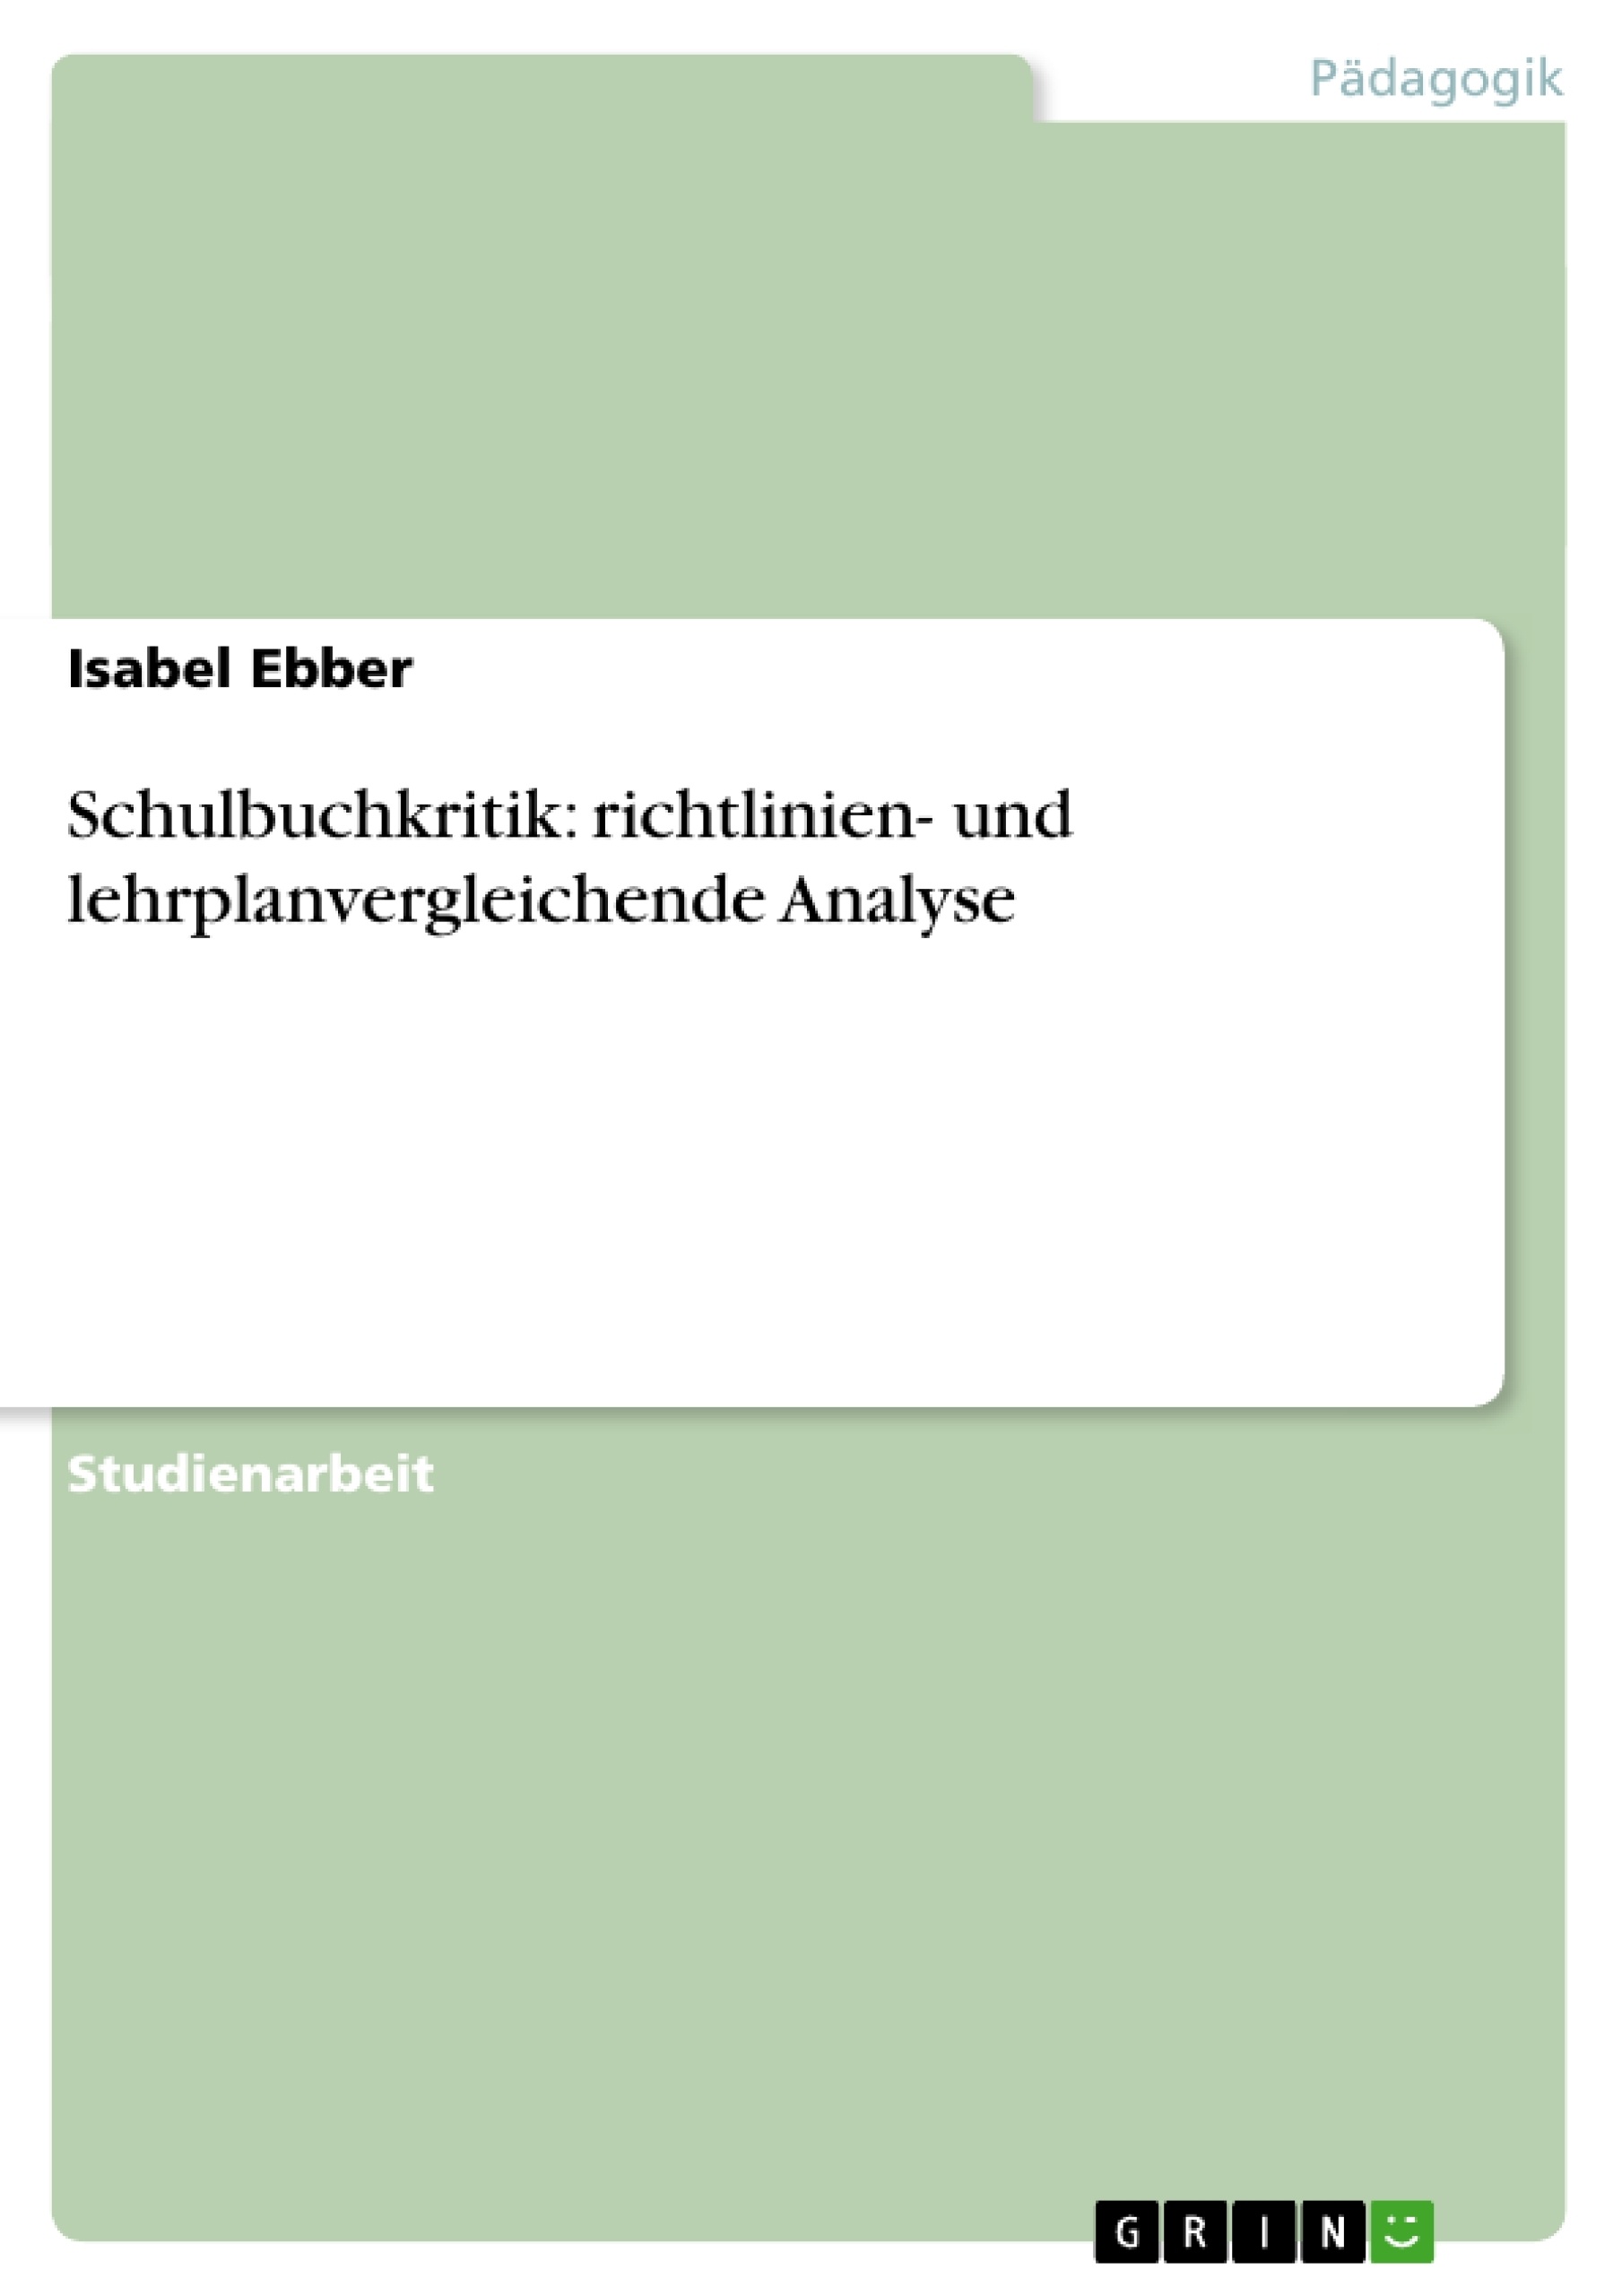 Título: Schulbuchkritik: richtlinien- und lehrplanvergleichende Analyse